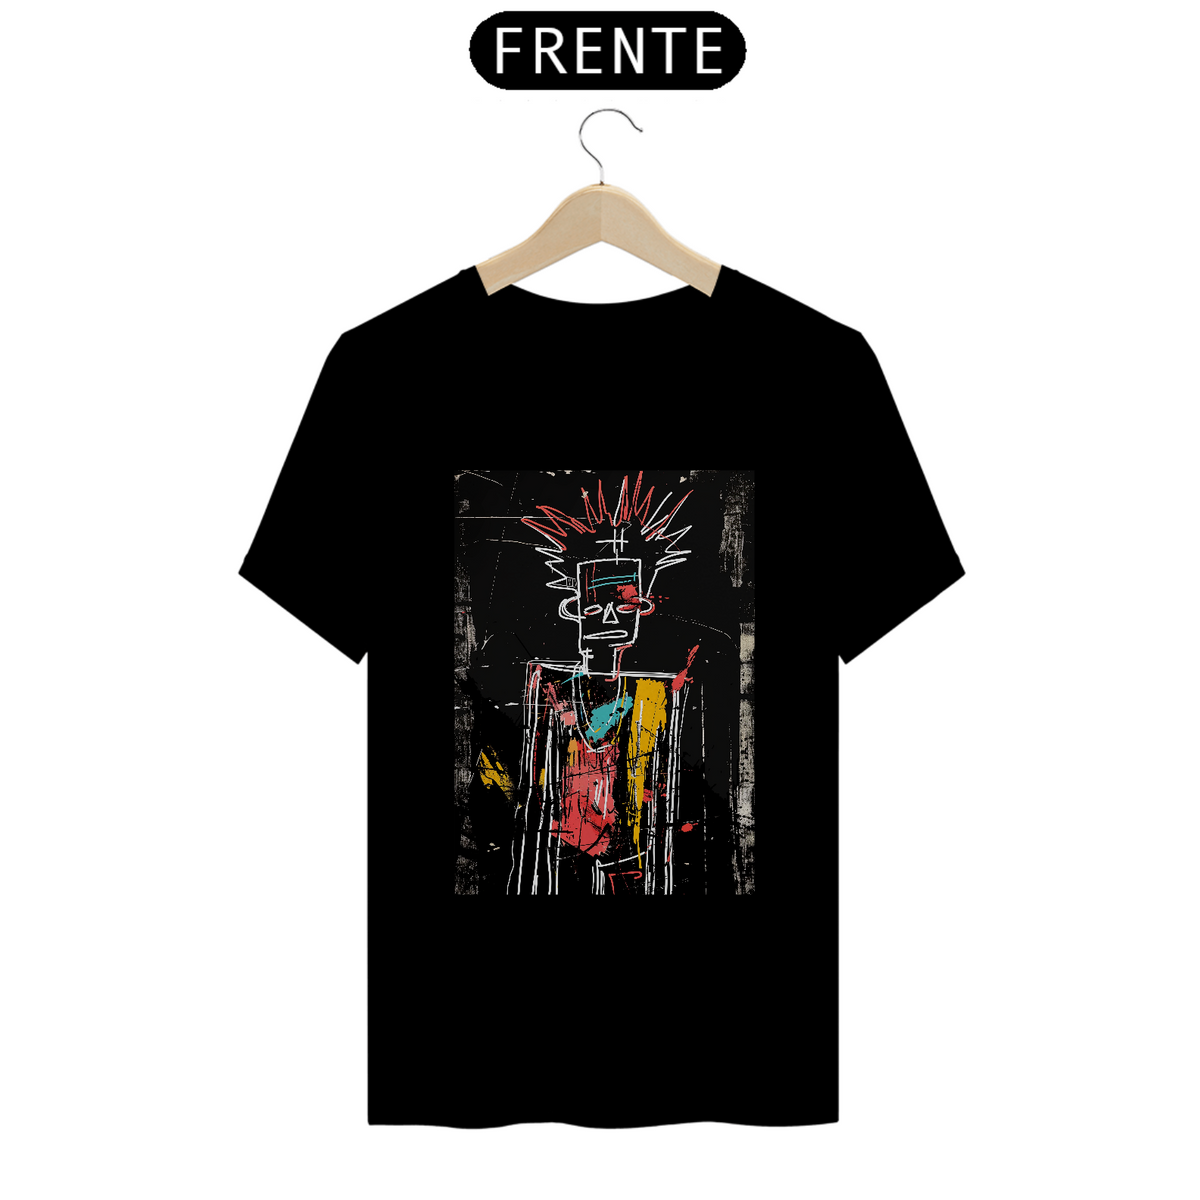 Nome do produto: Untitled/Estilo Jean-Michel Basquiat